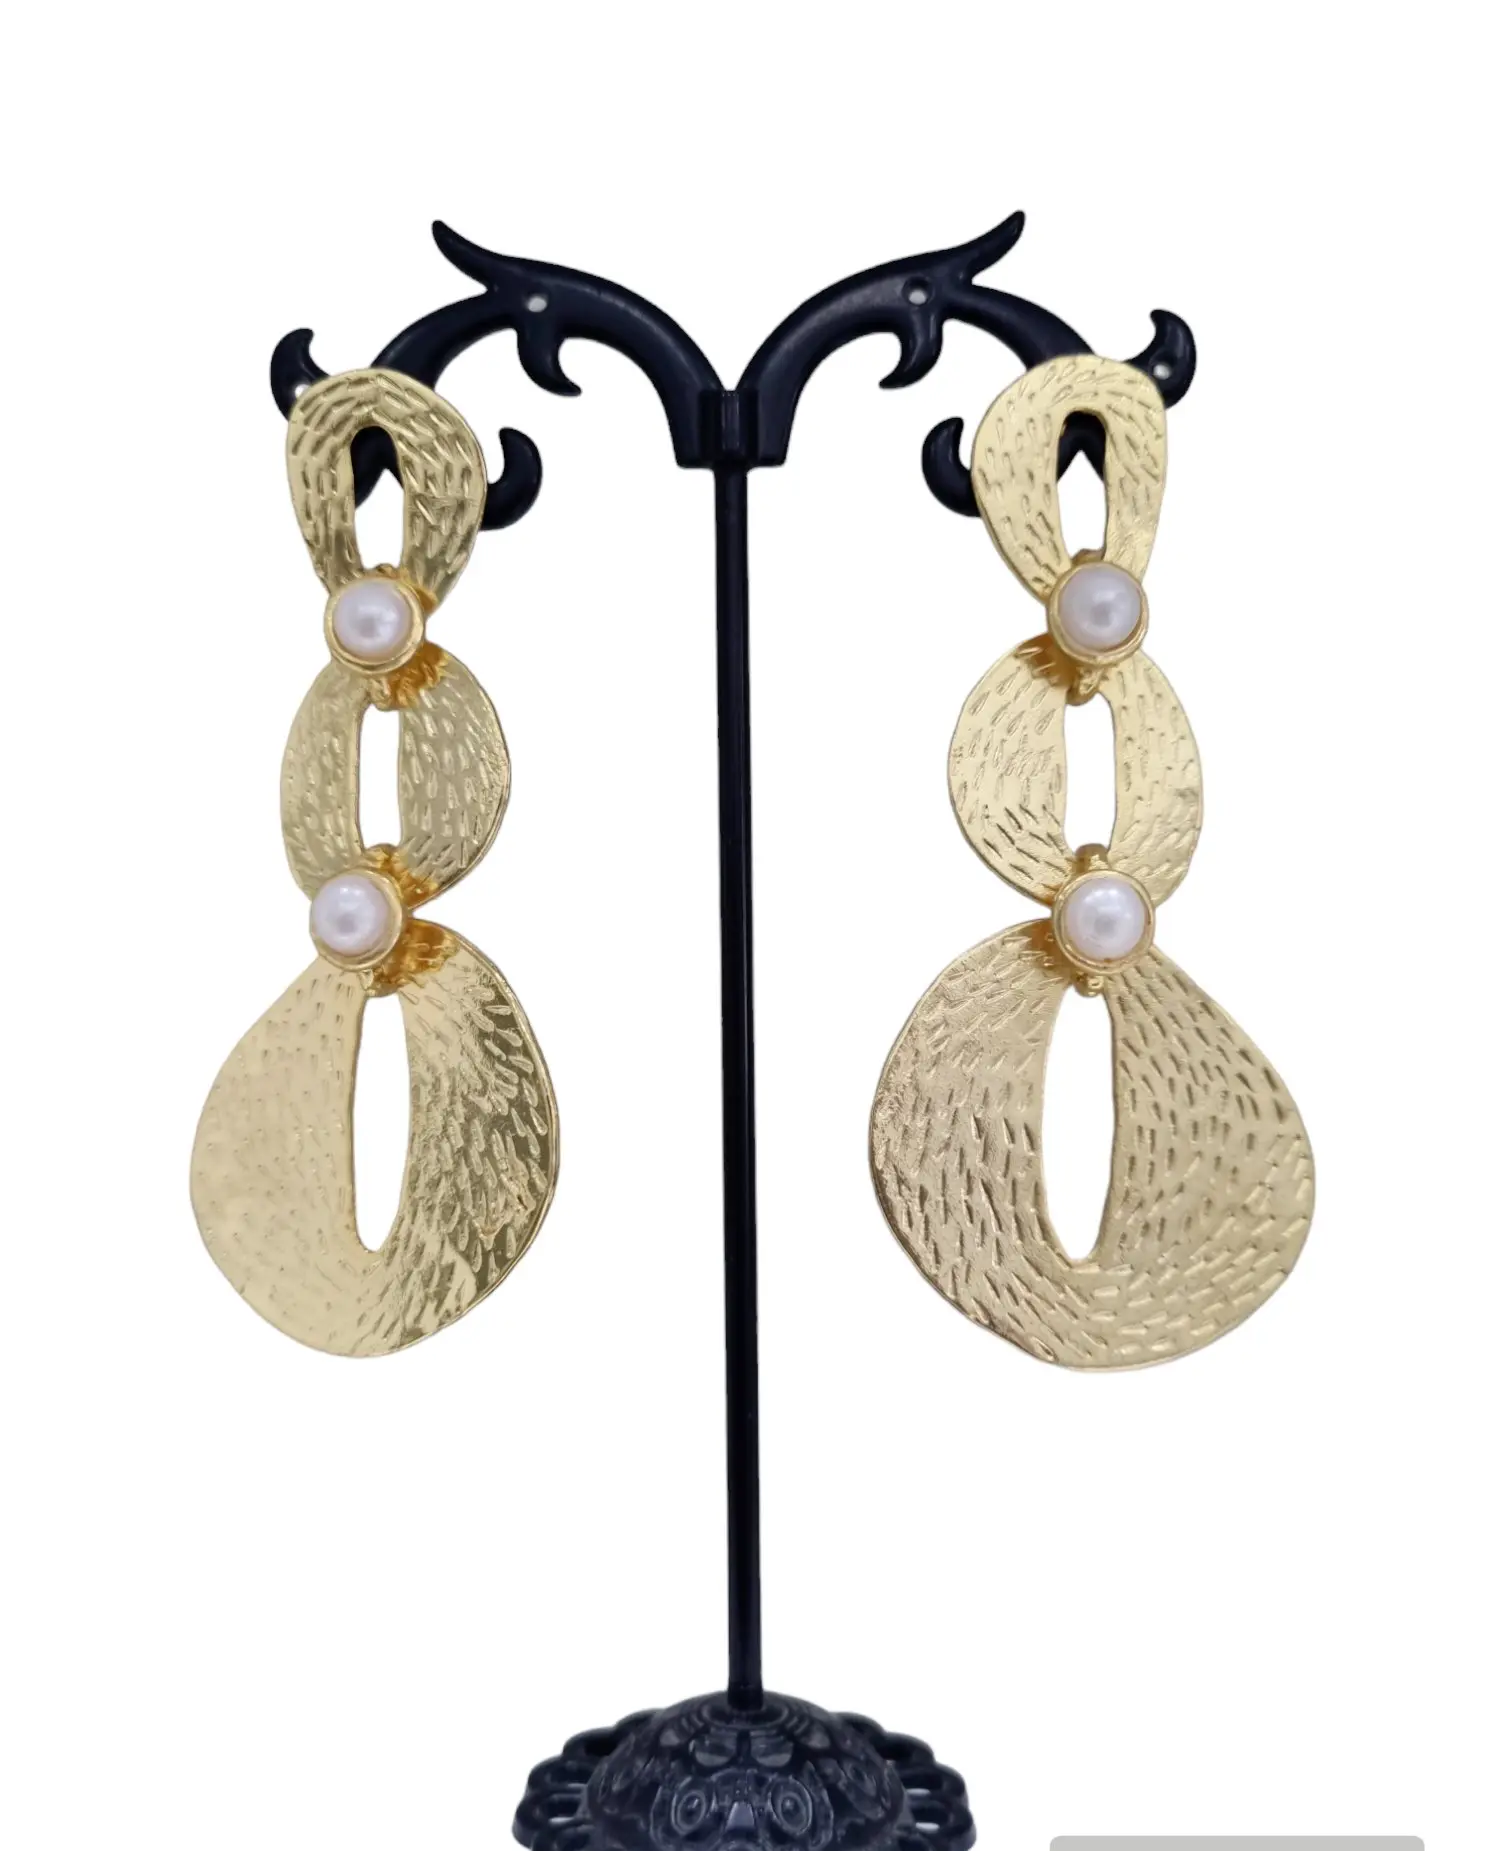 Orecchini eleganti in ottone con perle di fiume incastonate – Lunghezza 7.5cm – Peso 10.5gr